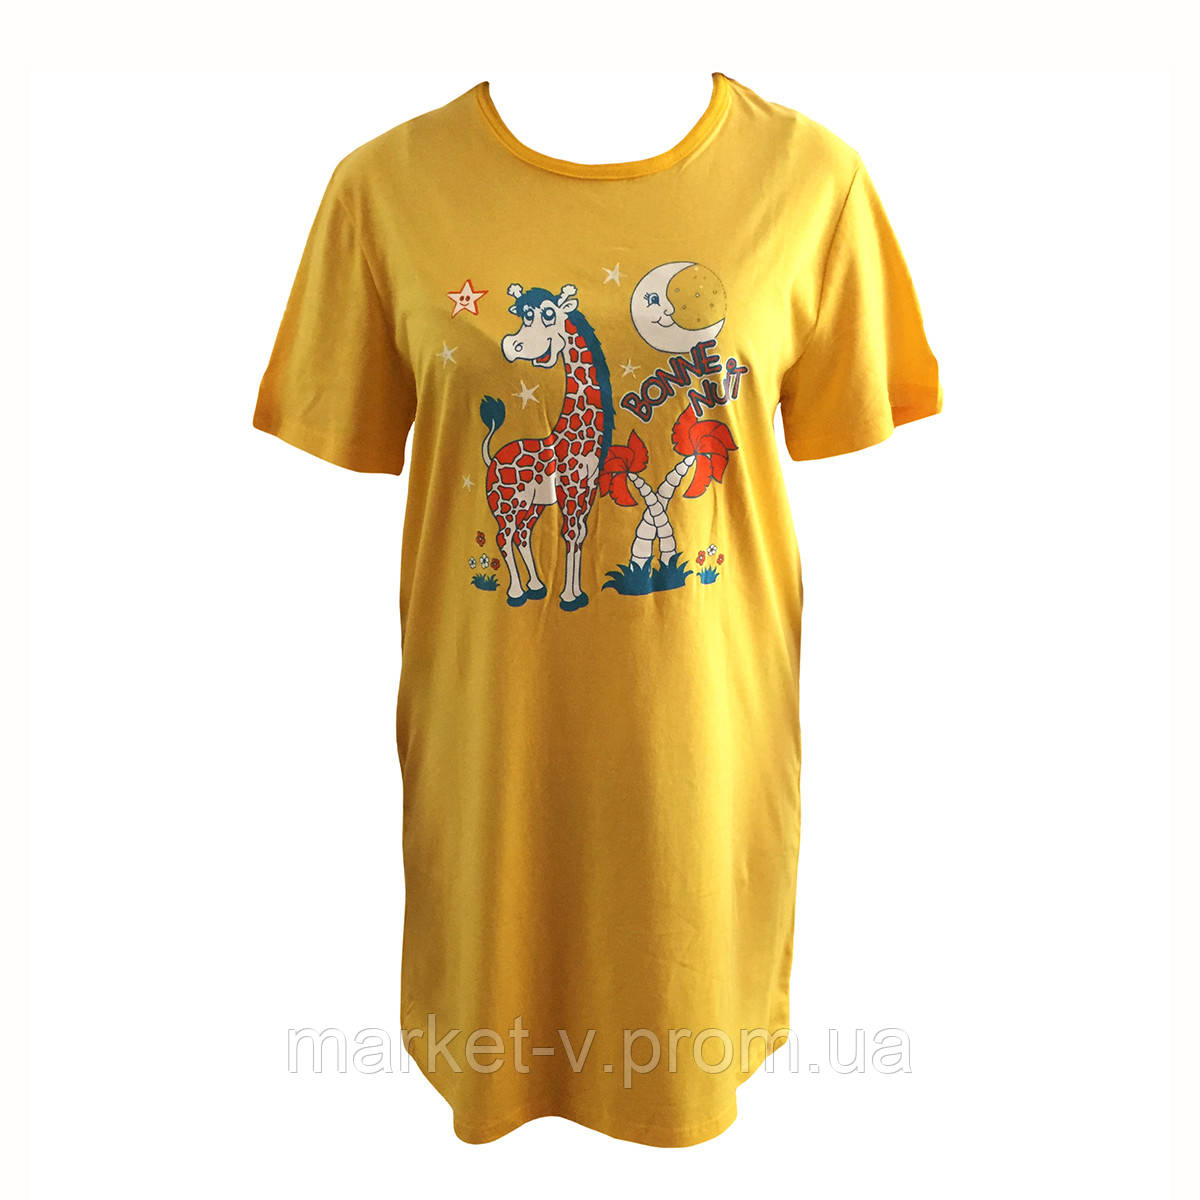 Річна жіноча піжама футболка трикотажна, розміри 42-52